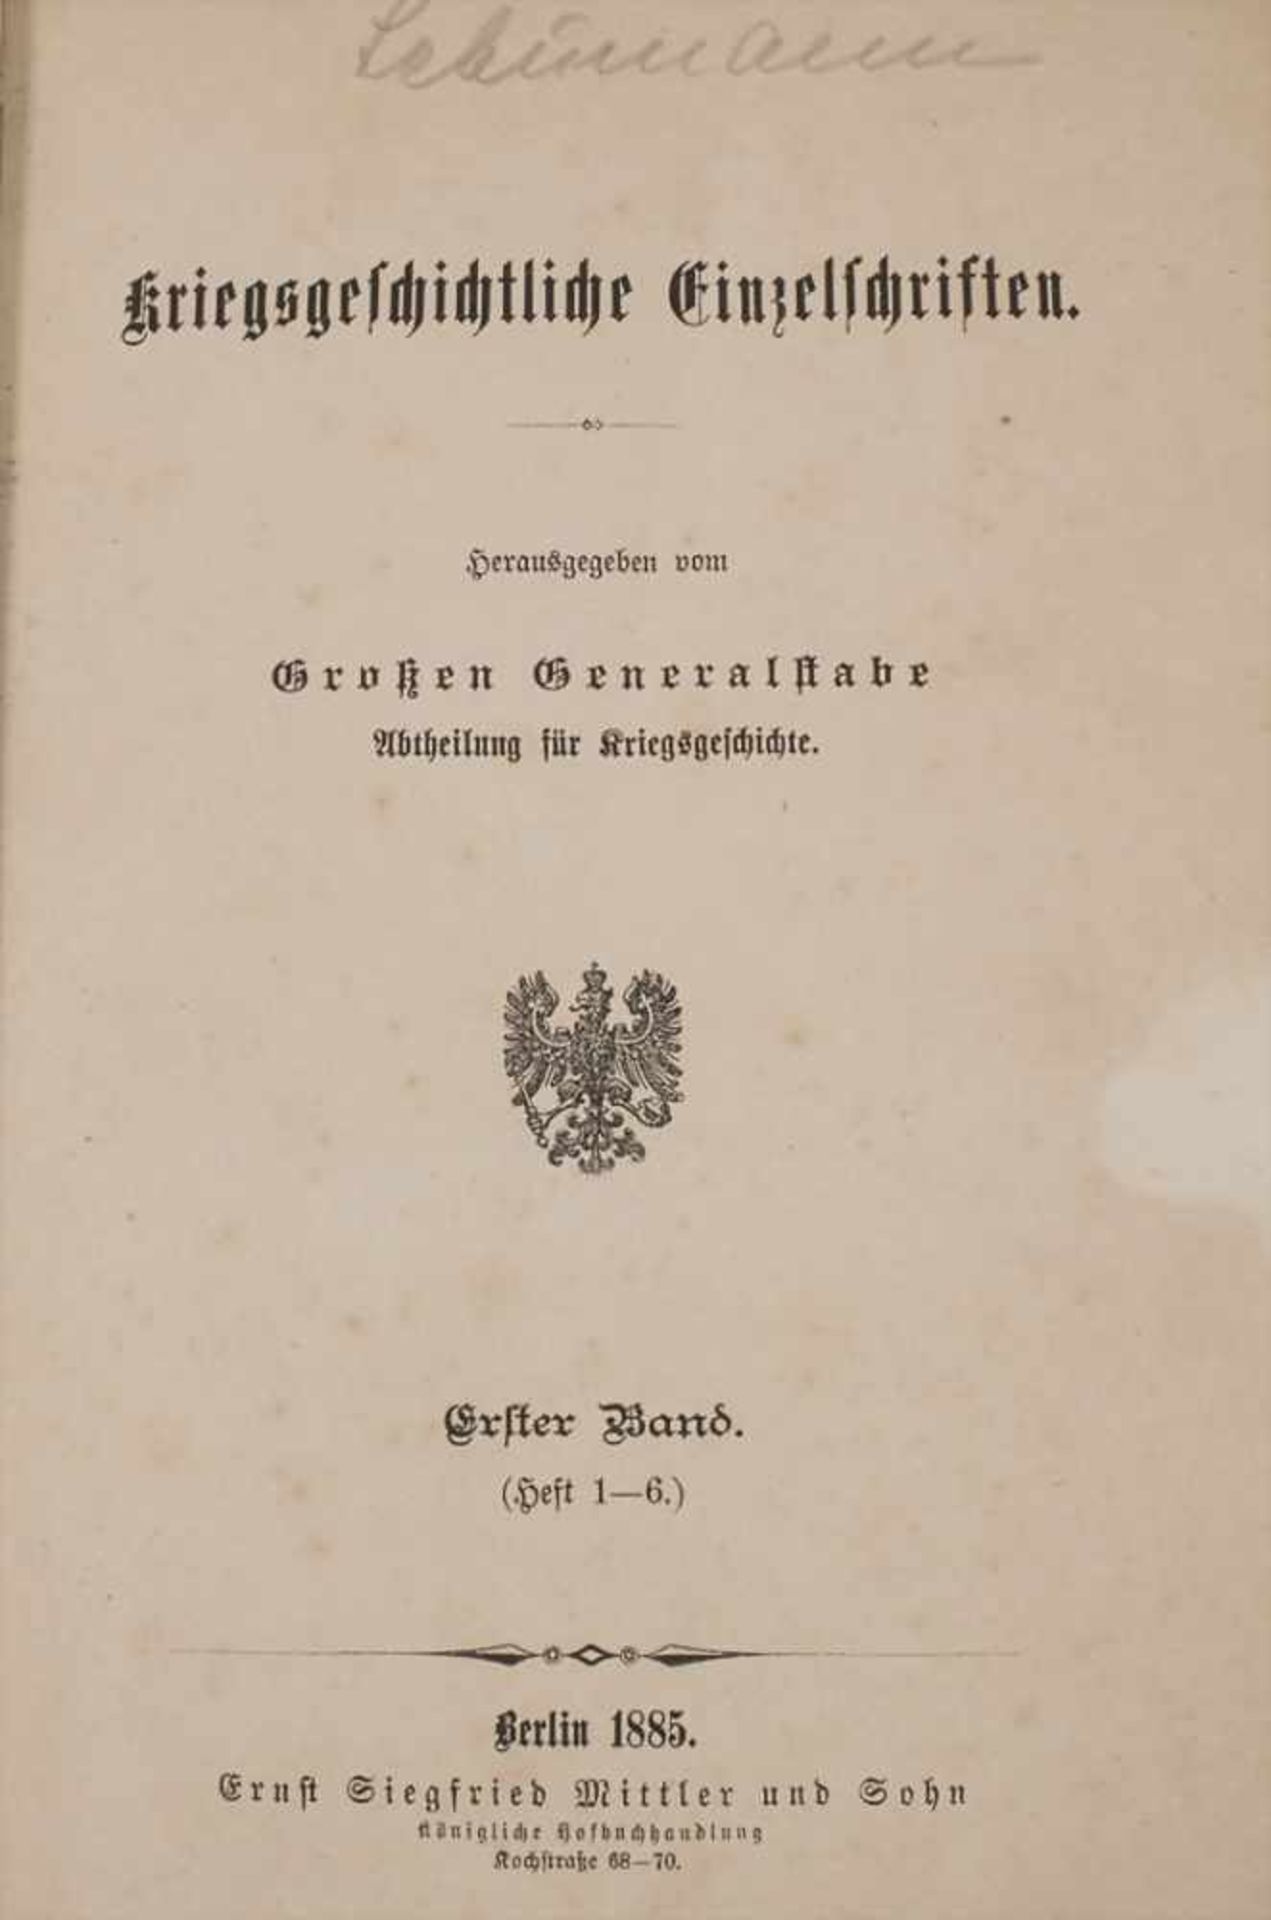 Kriegsgeschichtliche Einzelschriften, Berlin, 1885Inhalt: Heft 1-6, gebunden,Herausgeber: